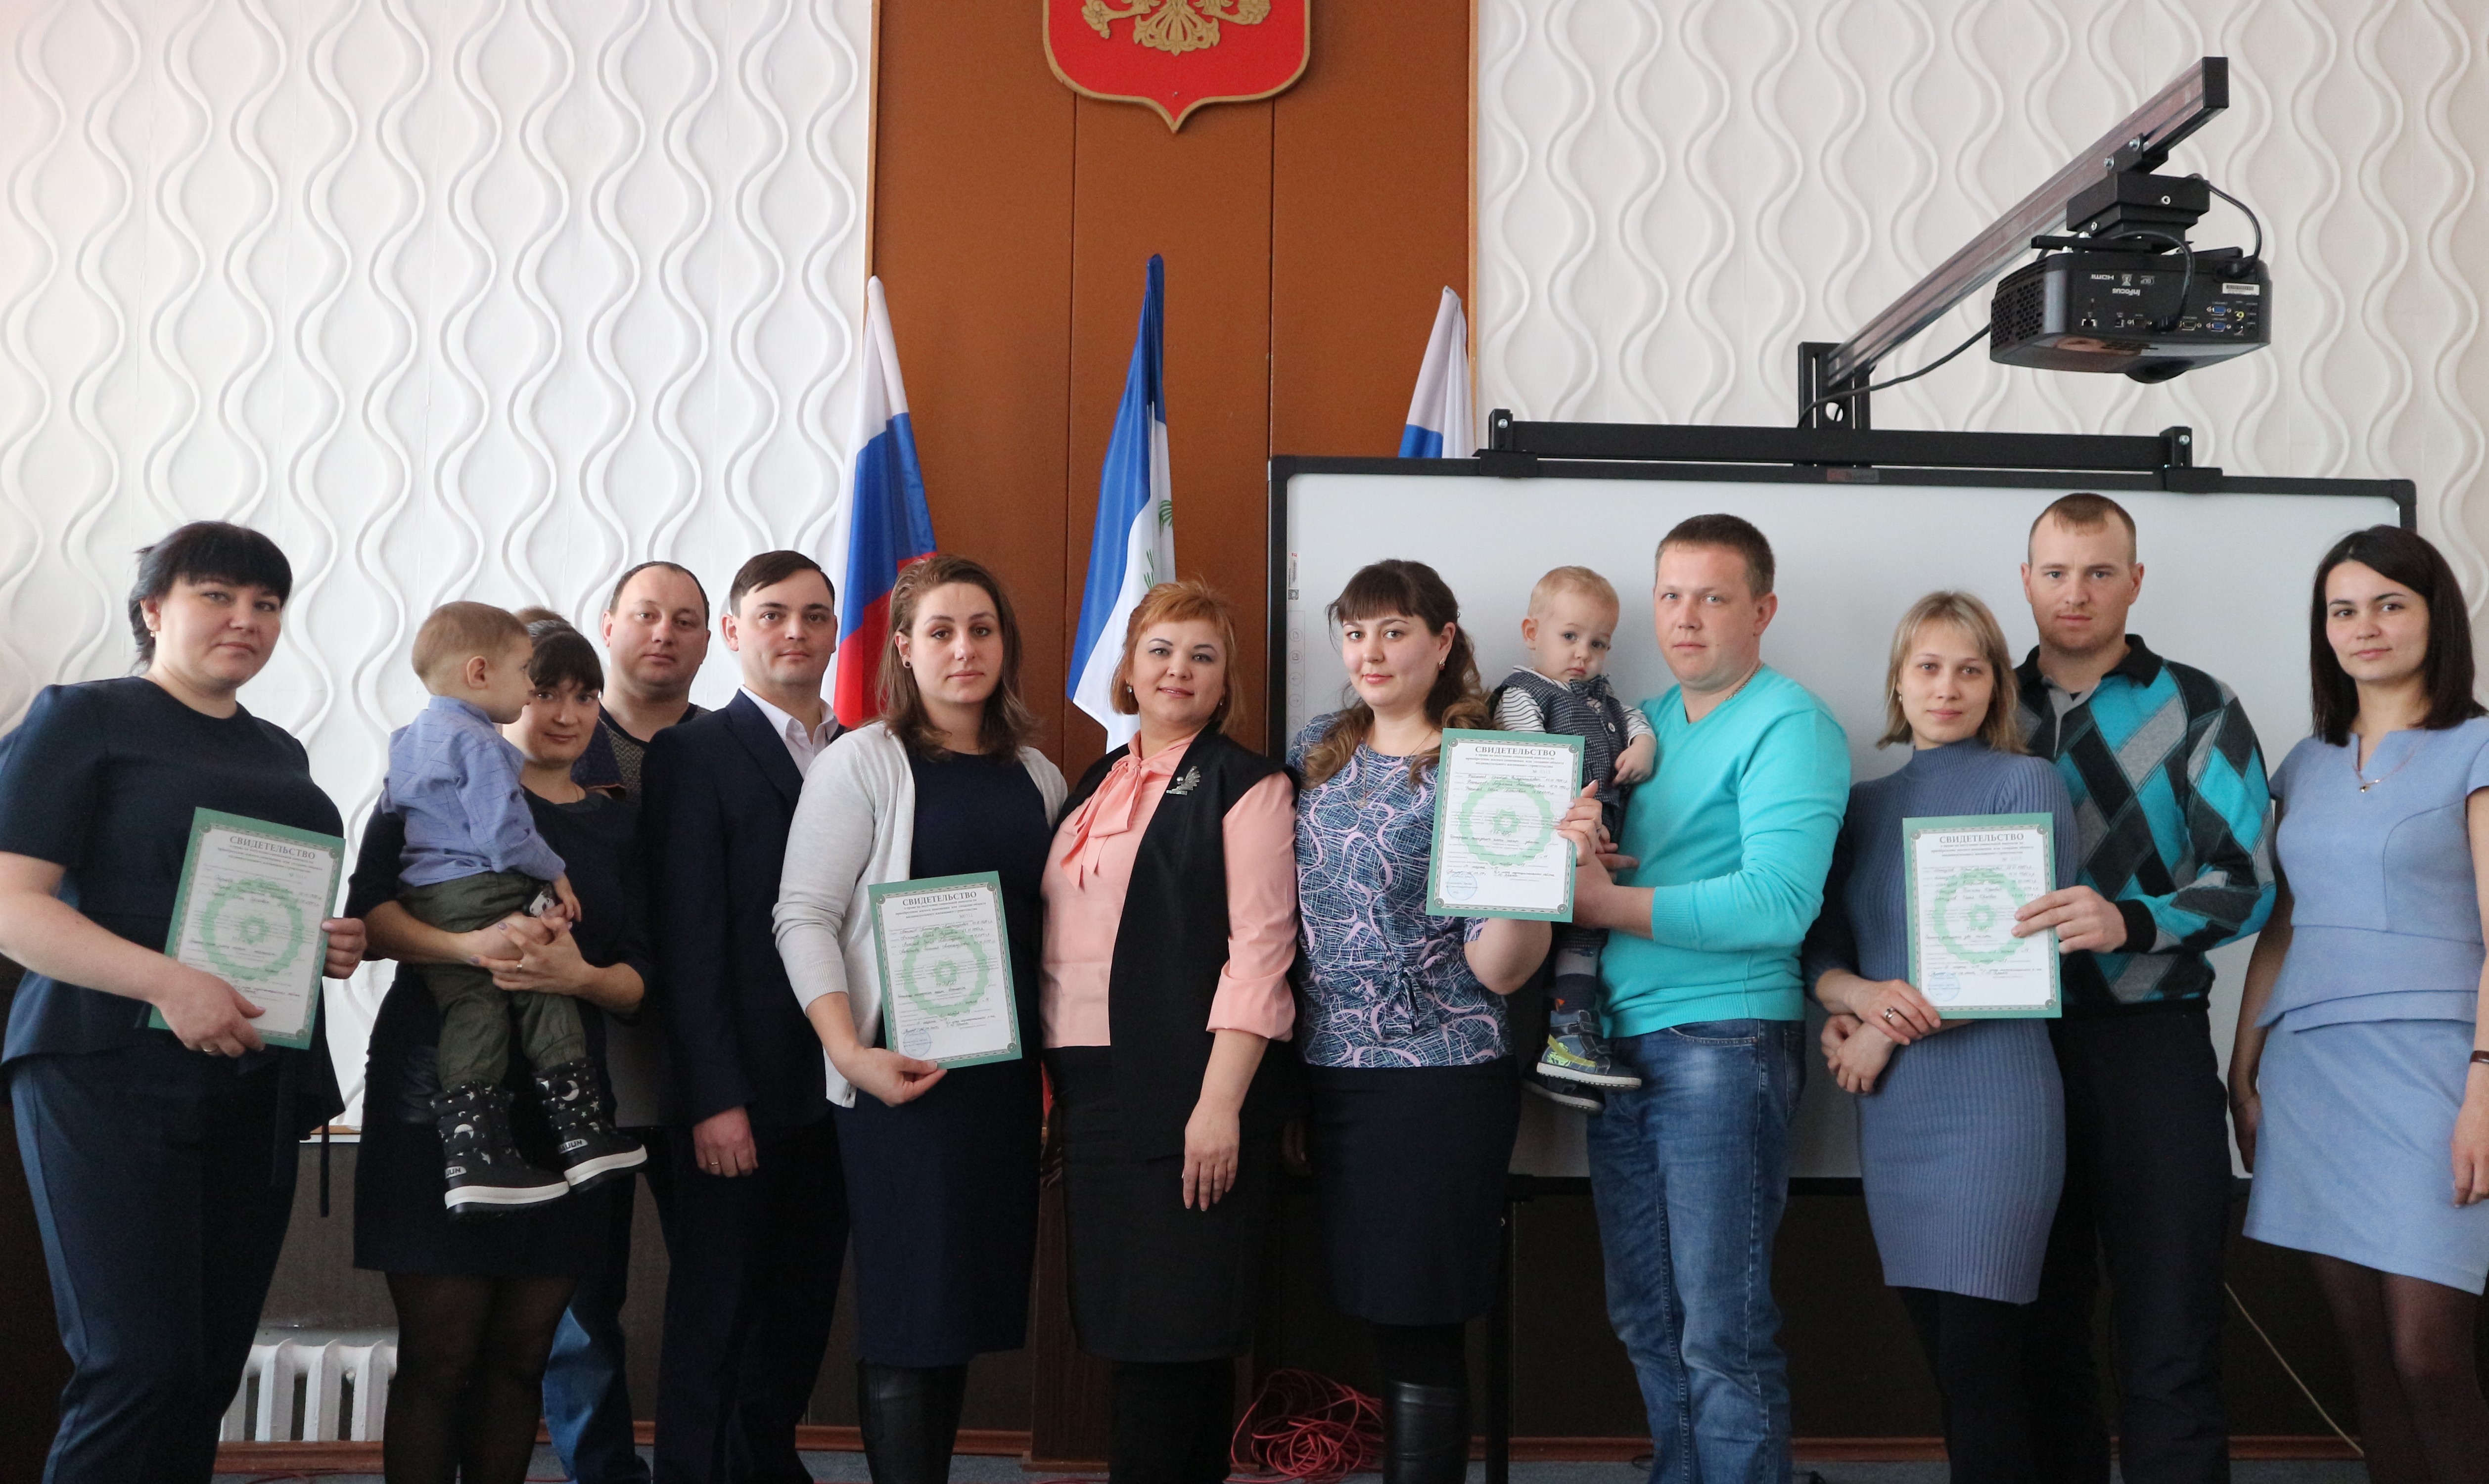 Пяти молодым семьям Качугского района вручили свидетельства на приобретение жилья.